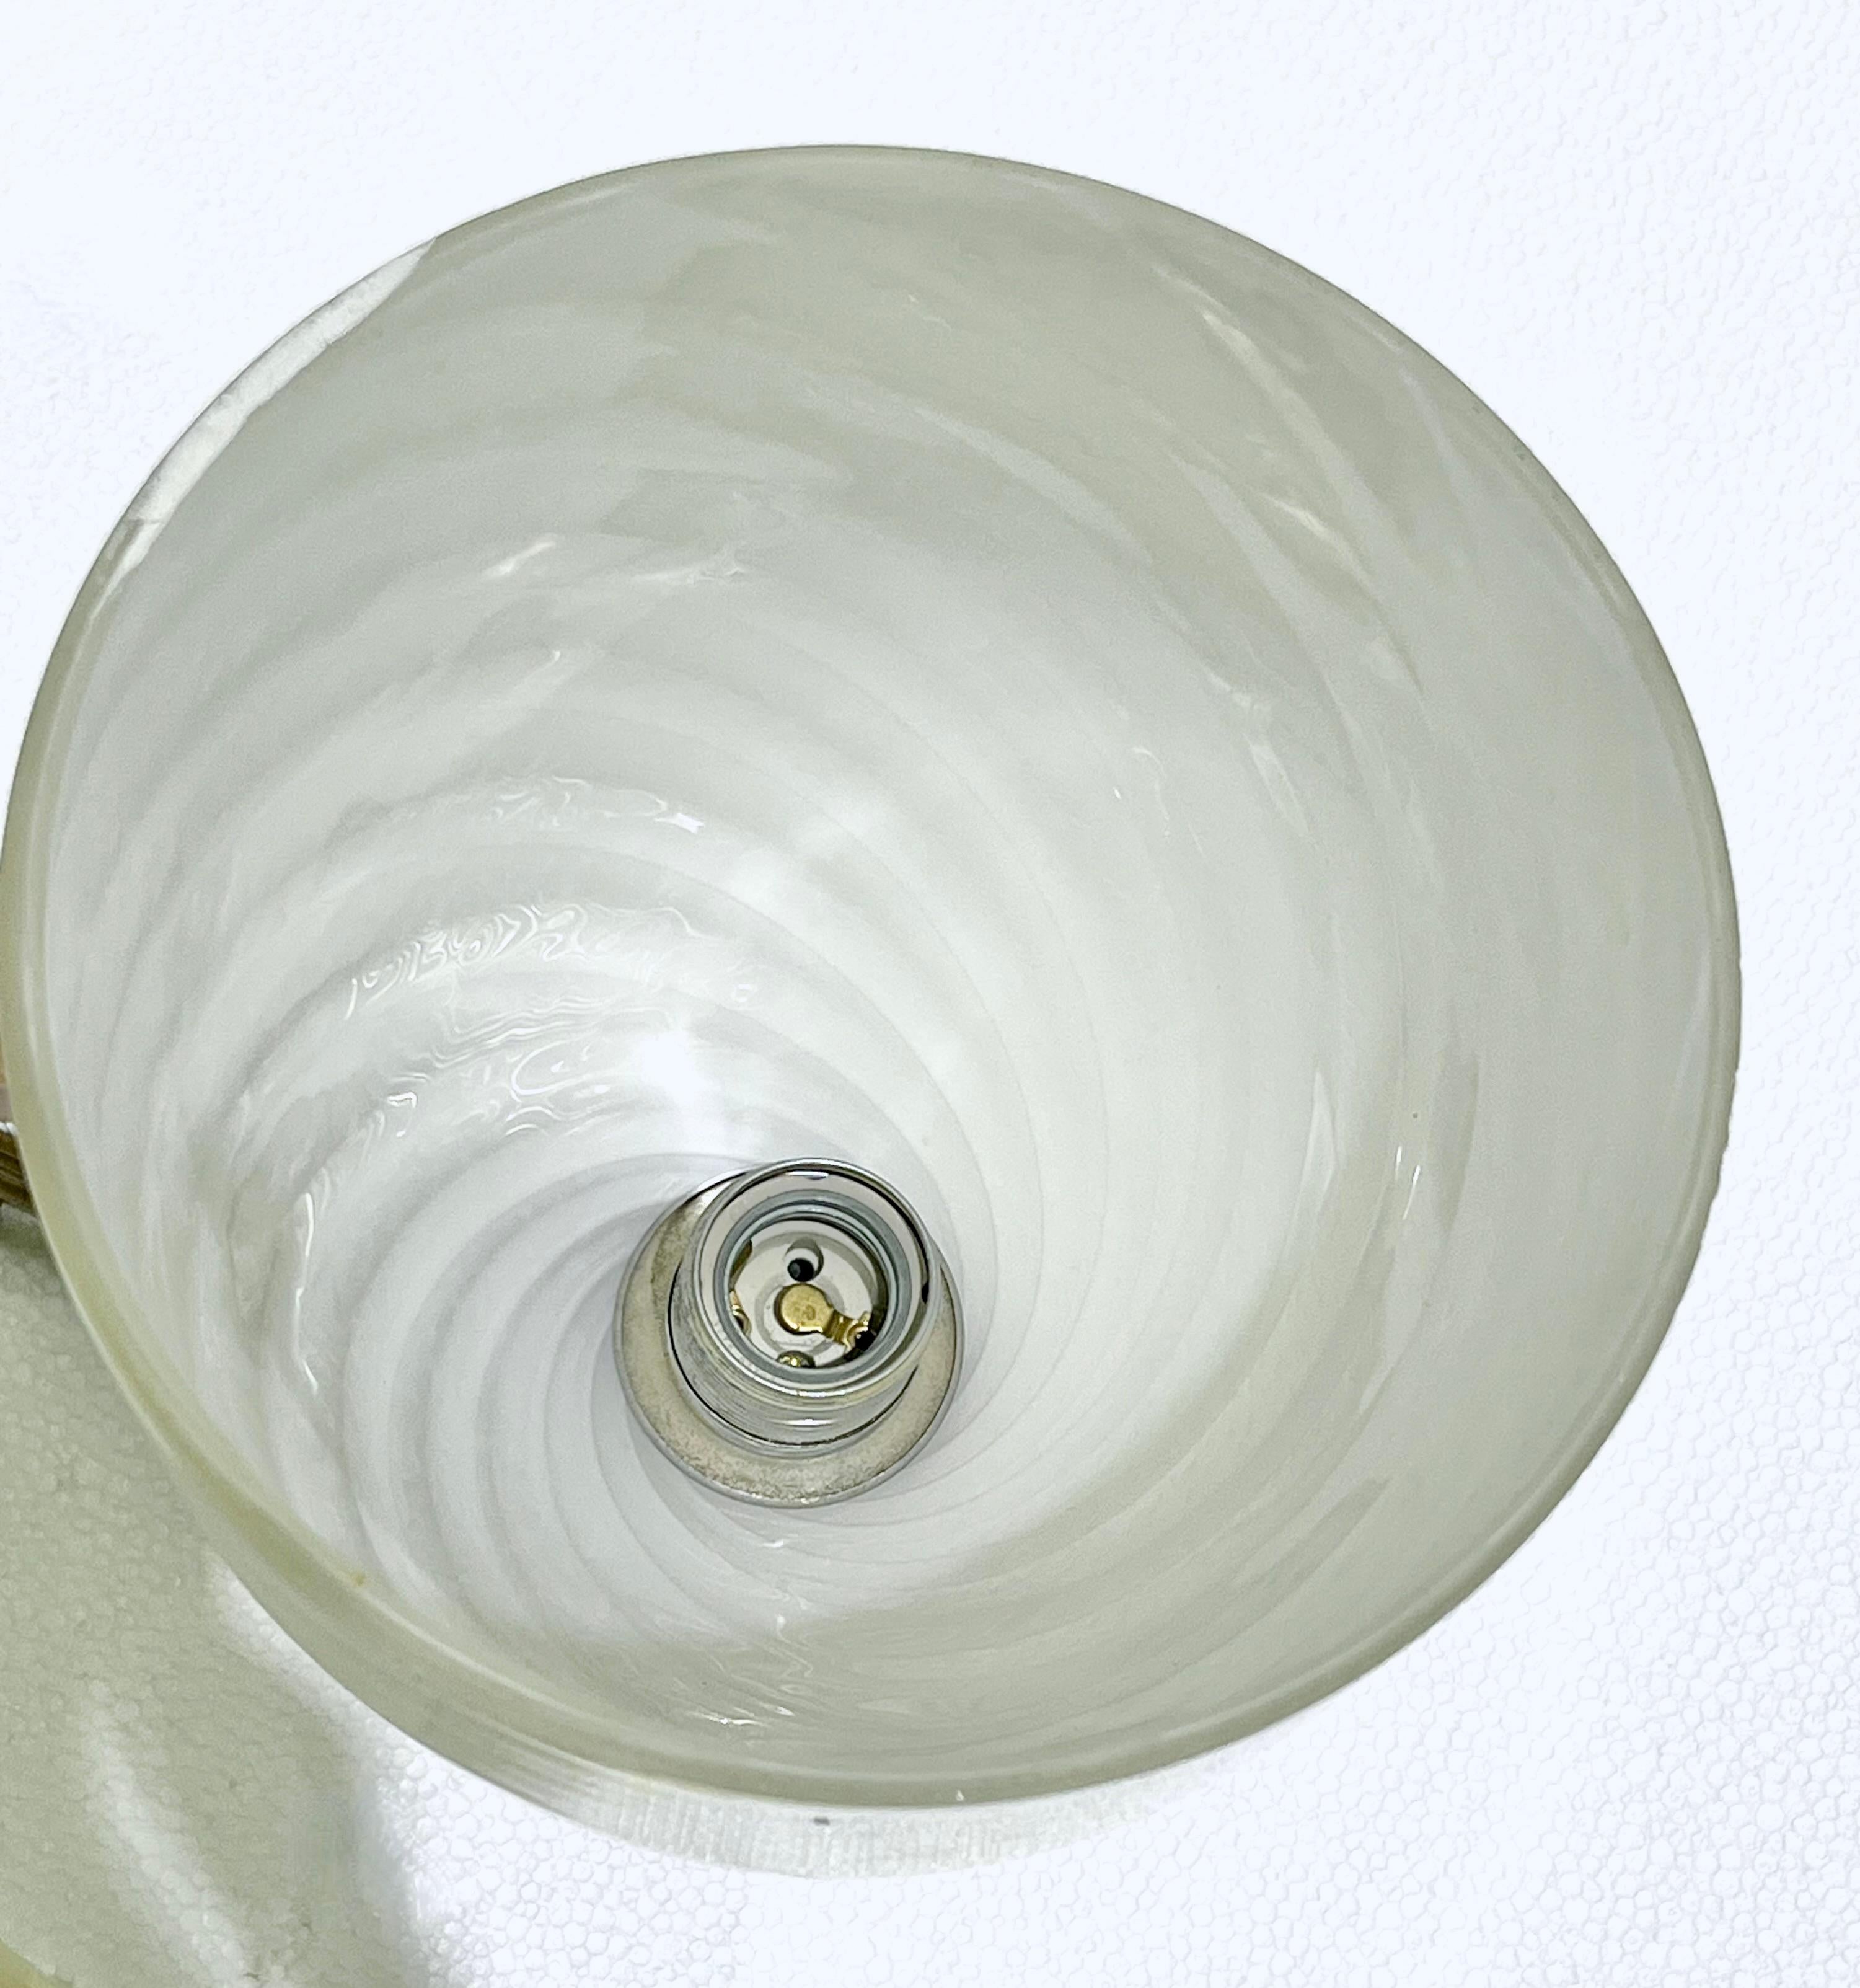 Mazzega 1960s Italian Art Deco Design White and Silver Murano Glass Bowl Sconce For Sale 2